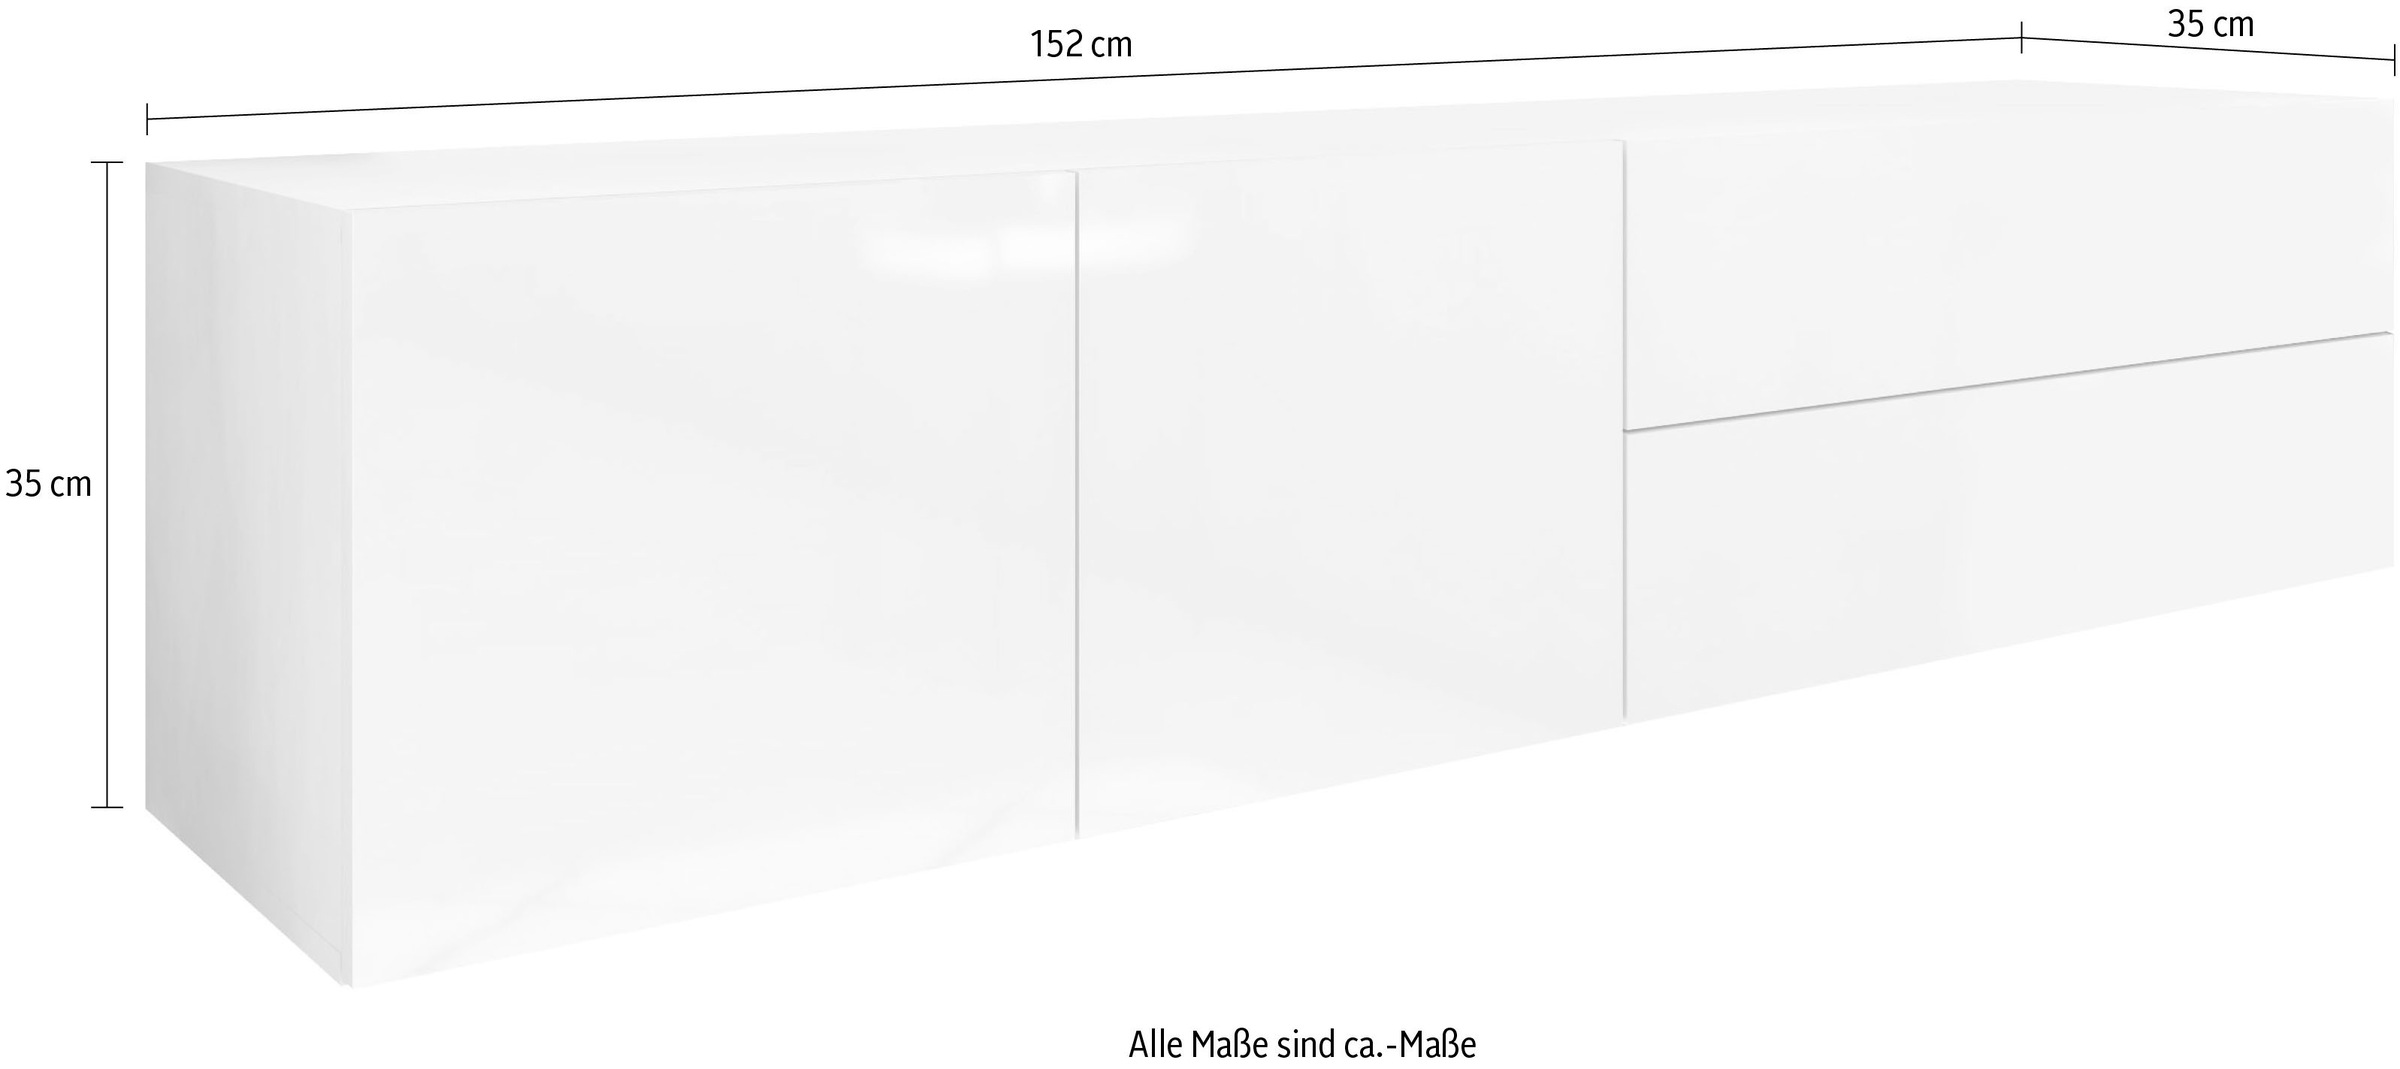 borchardt Möbel Lowboard »Vaasa«, Breite 152 cm, nur hängend kaufen bei OTTO | Lowboards